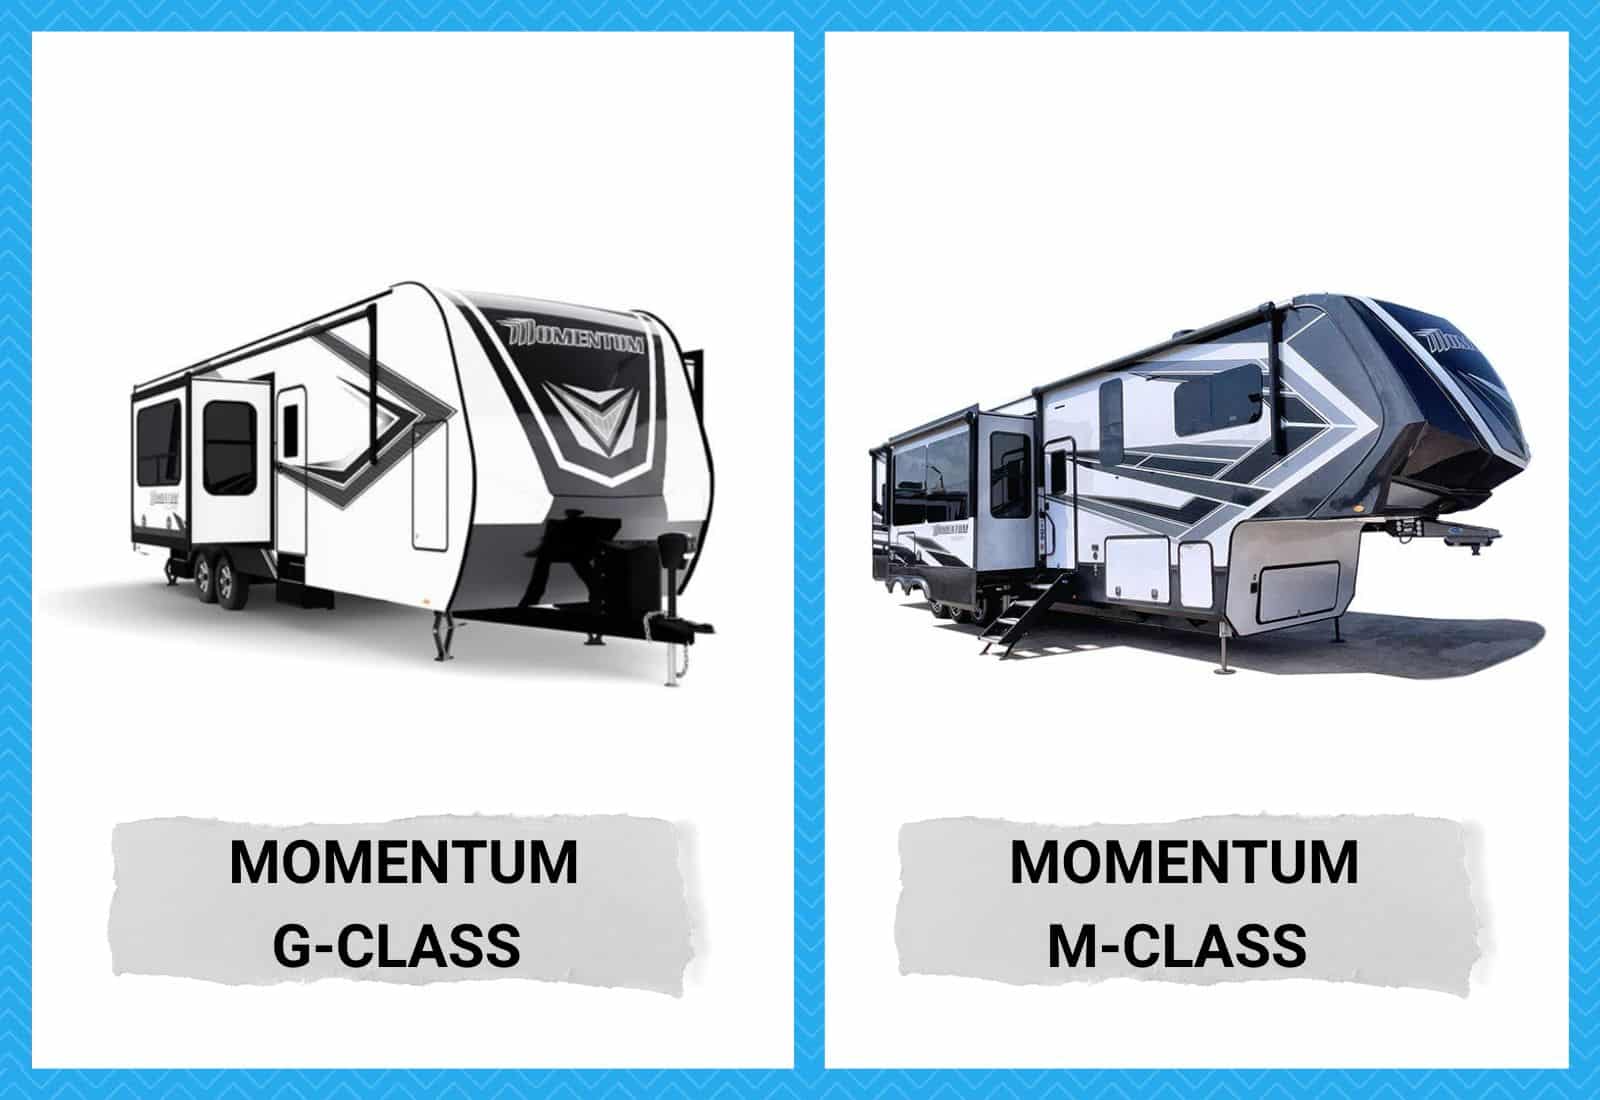 Momentum G-Class vs M-Class